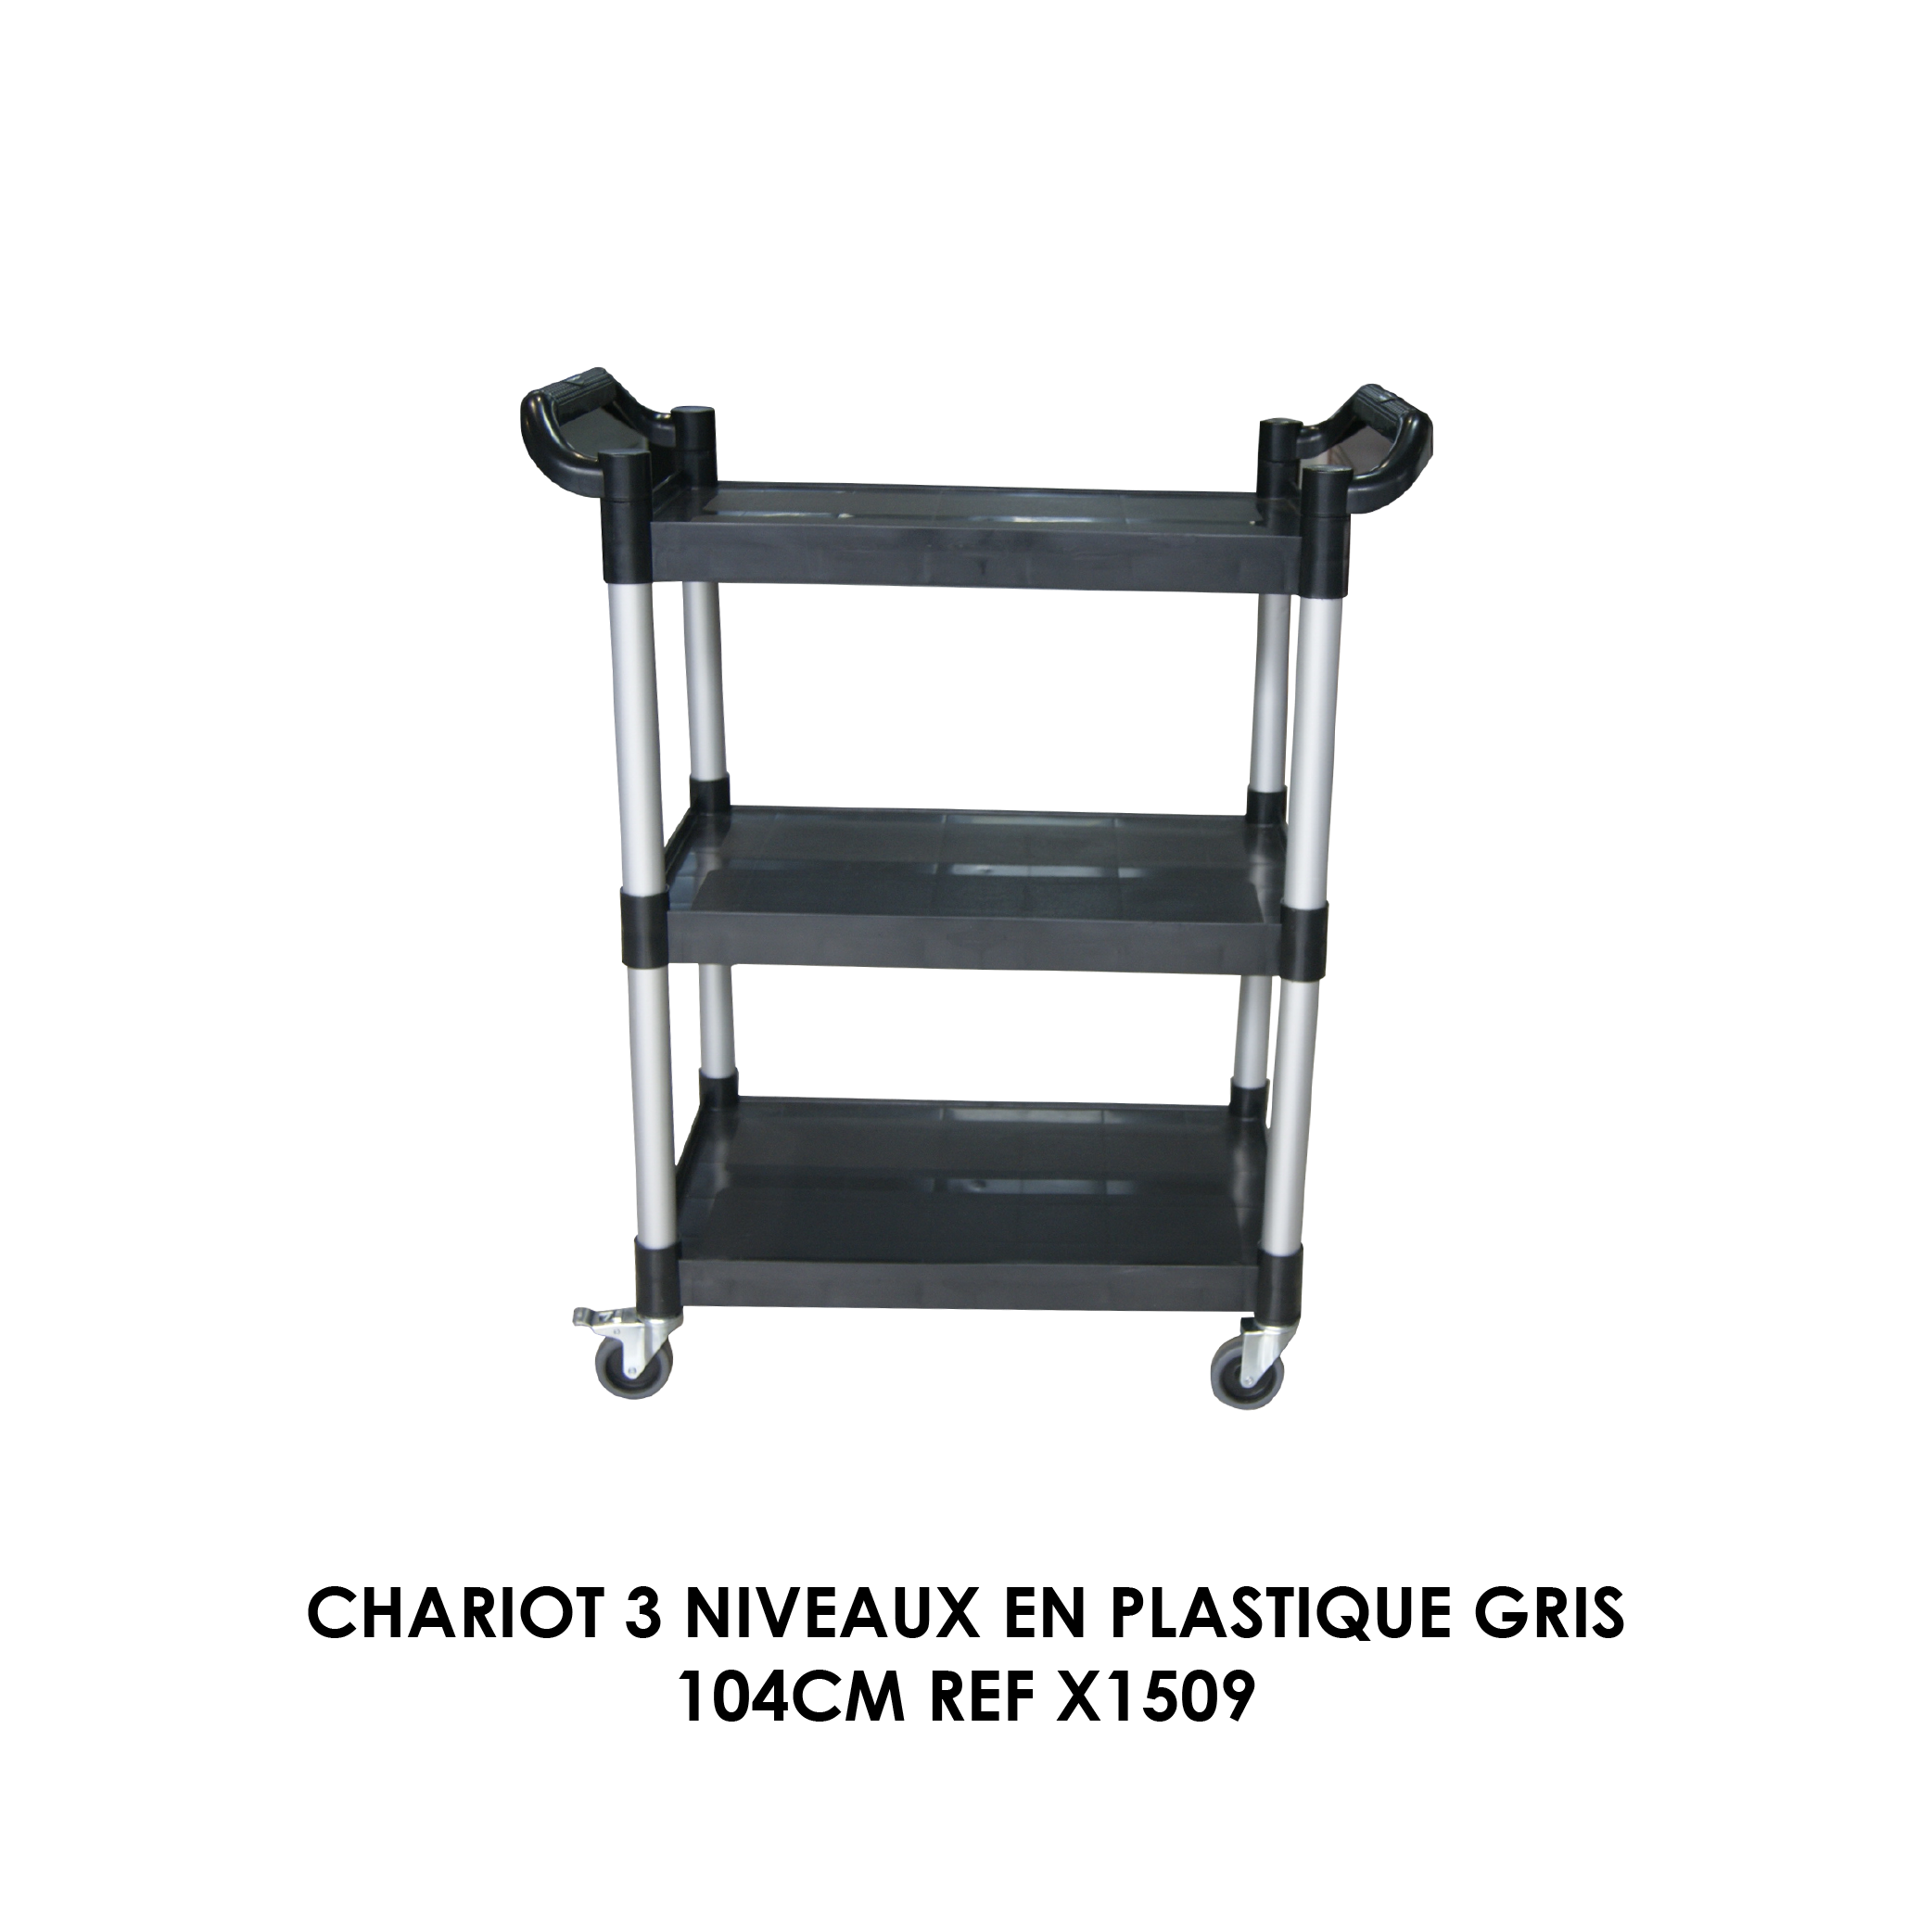 CHARIOT 3 NIVEAUX EN PLASTIQUE GRIS 104CM REF X1509